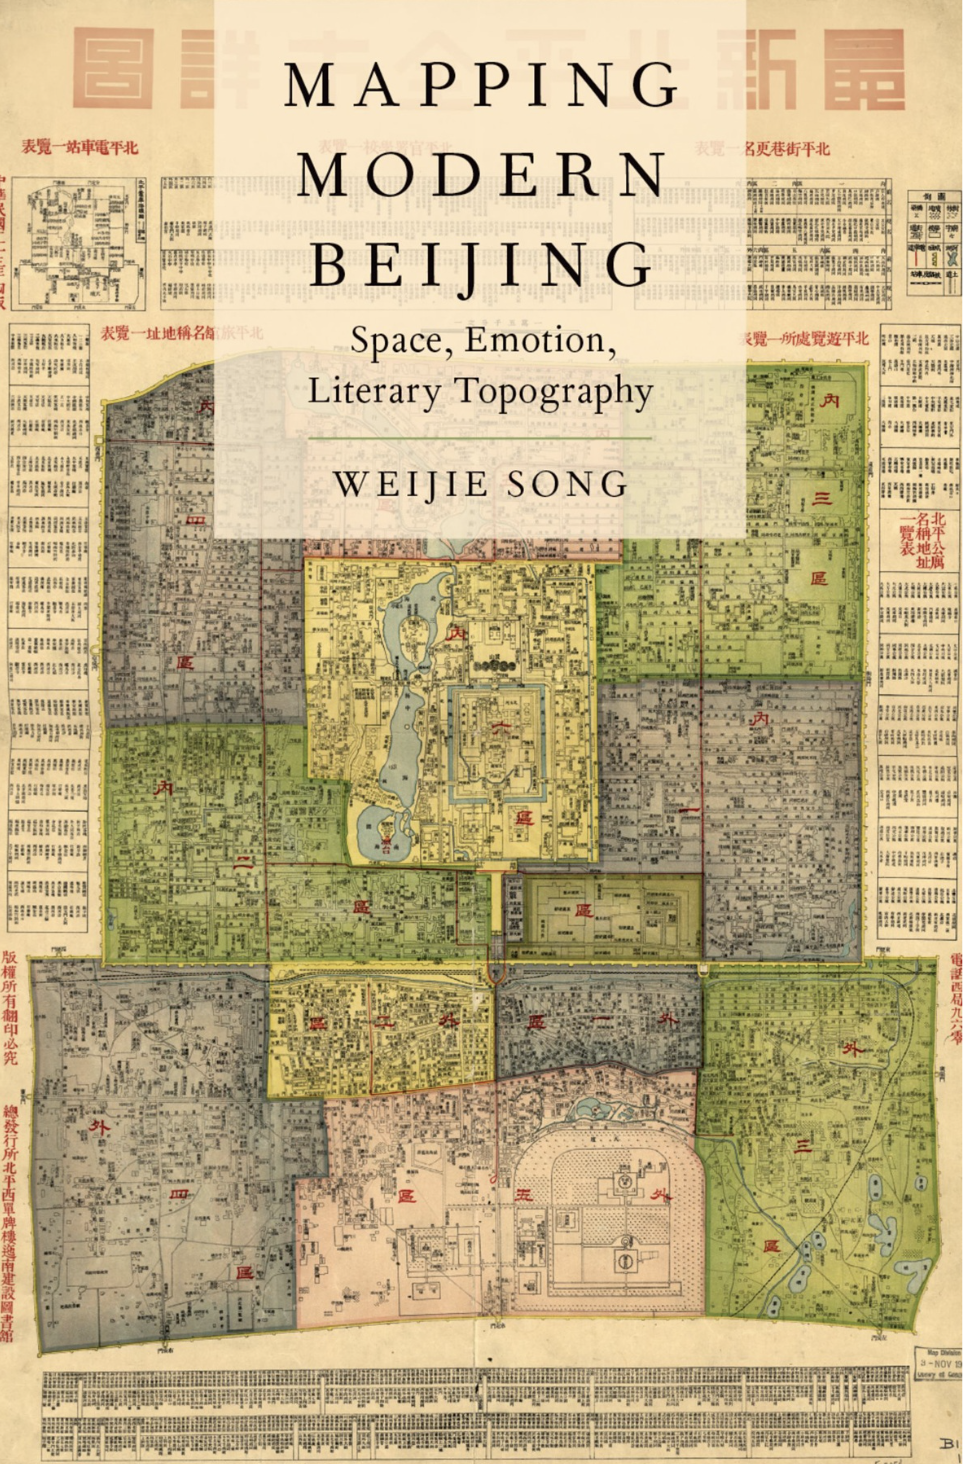 宋伟杰著《测绘现代北京：空间、情感与文学地形》（2017）